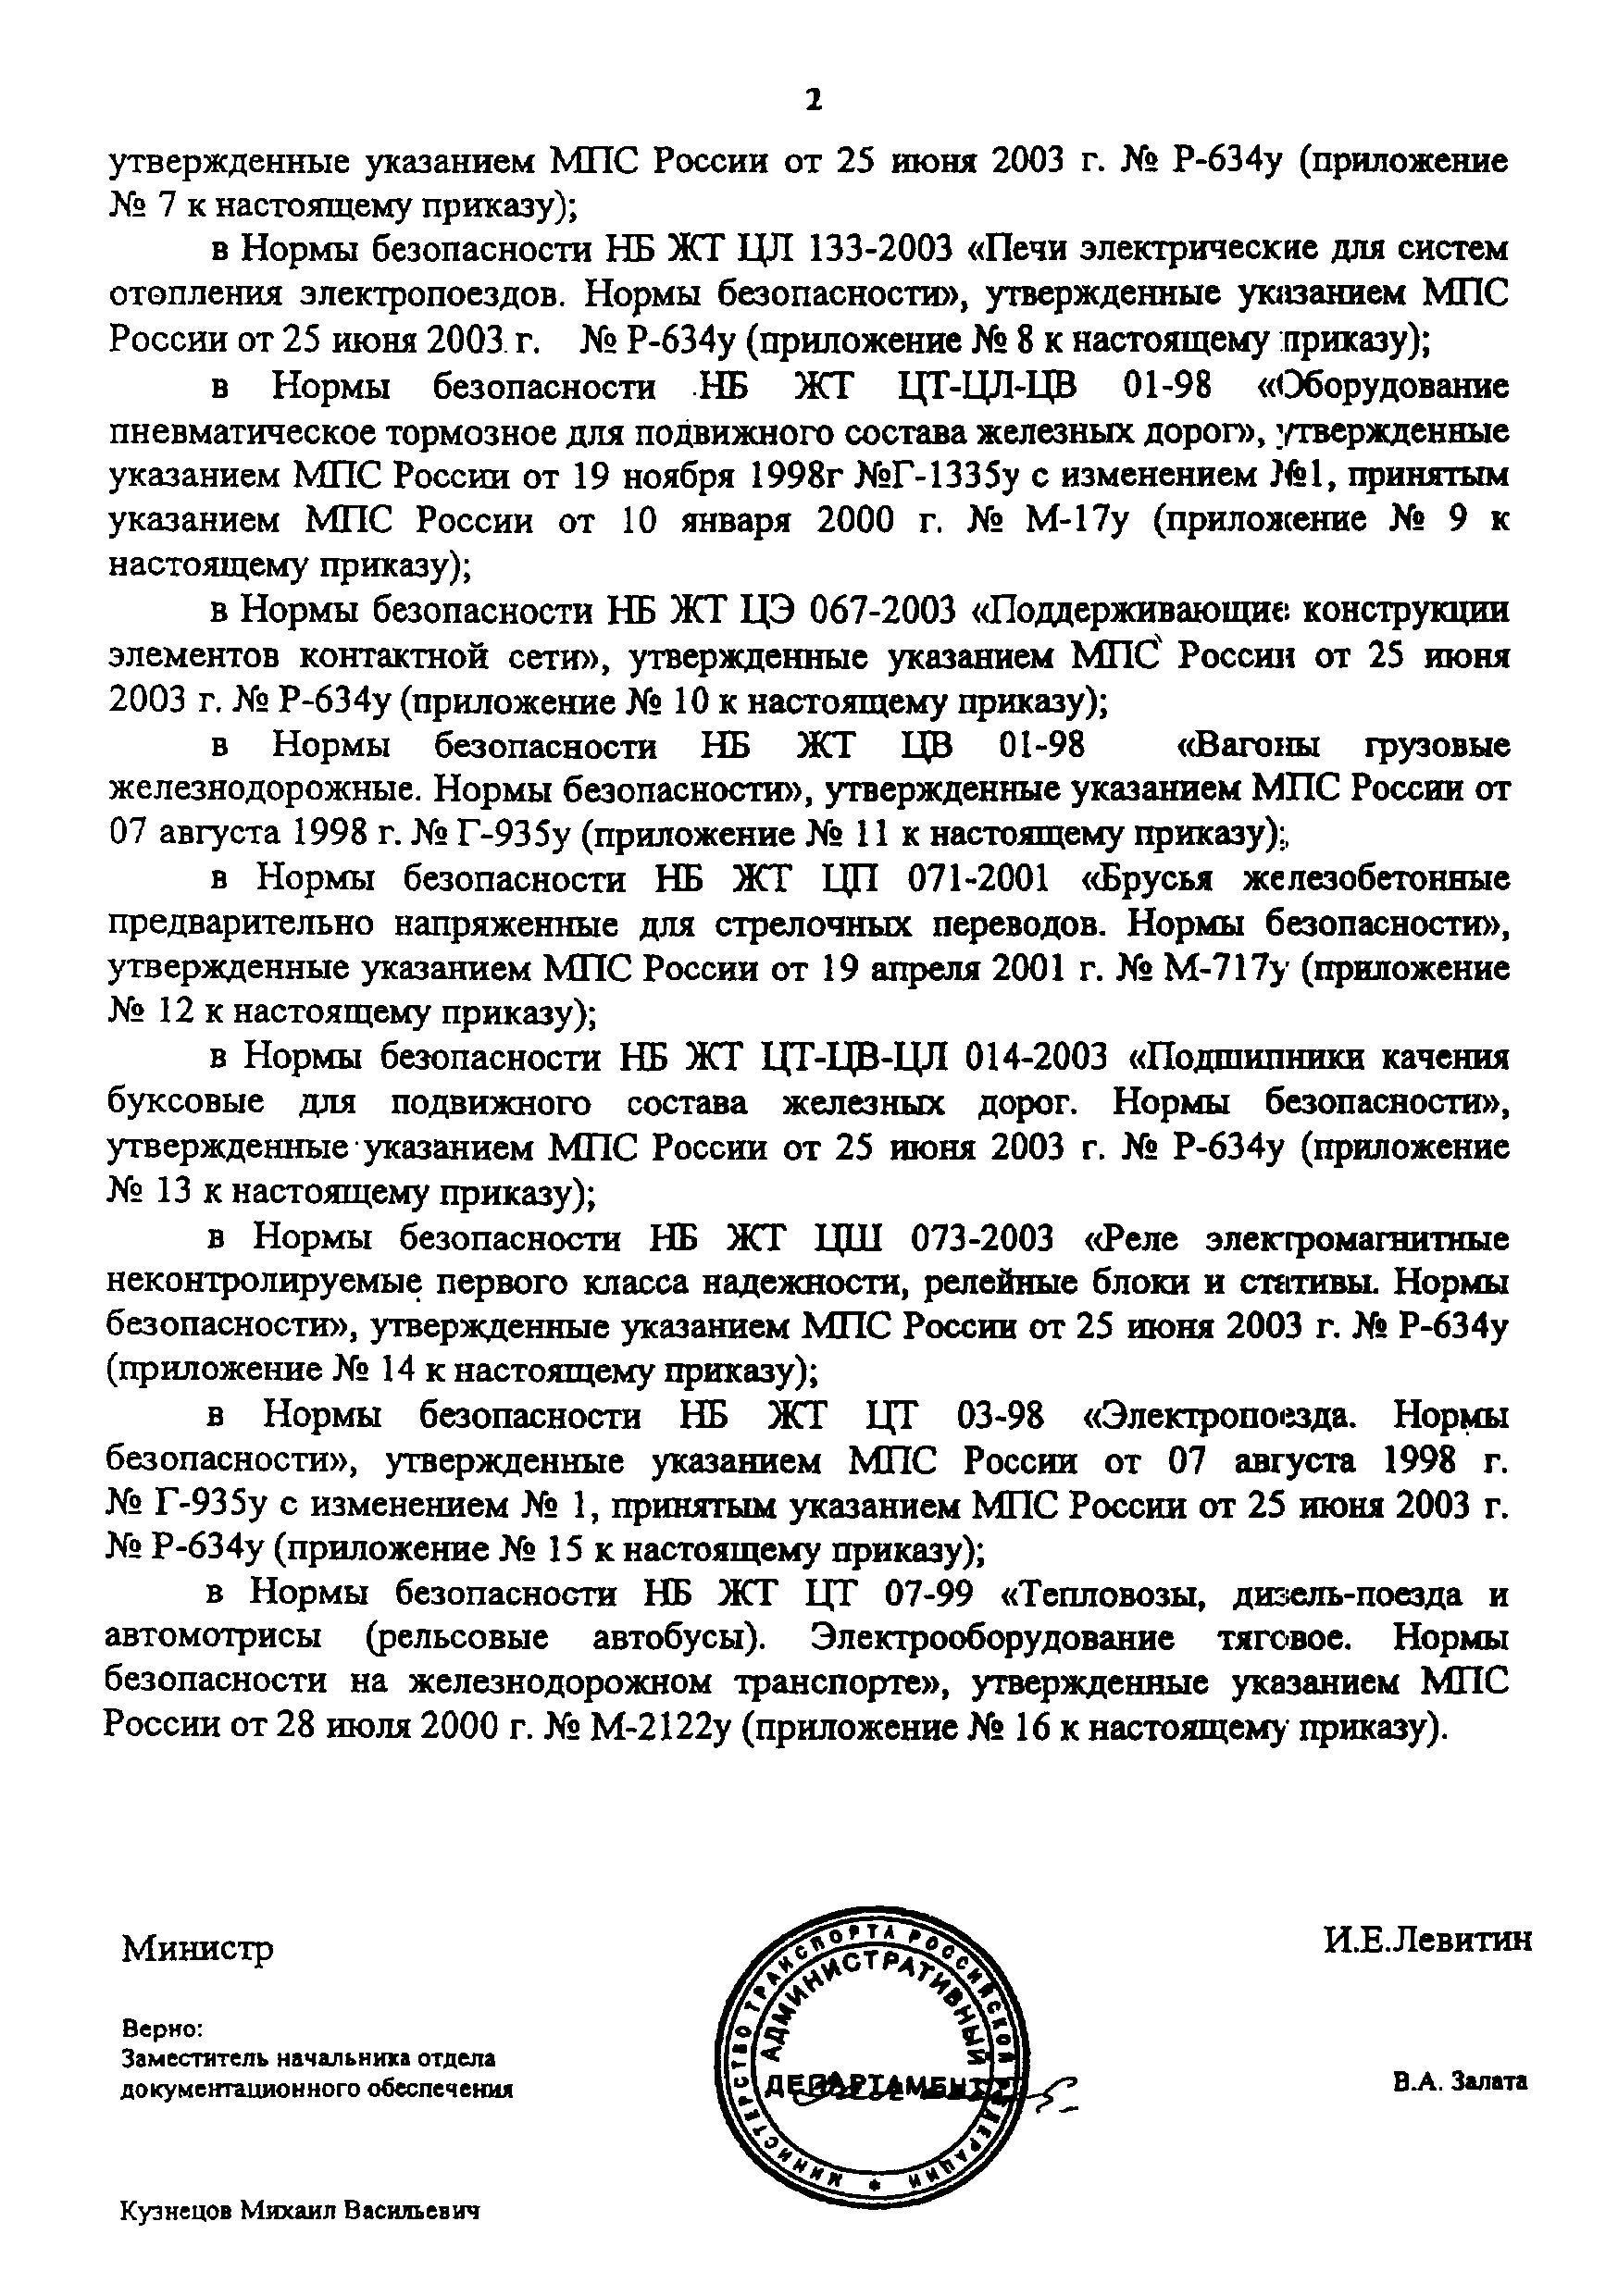 НБ ЖТ ЦТ-ЦВ-ЦЛ 012-2003